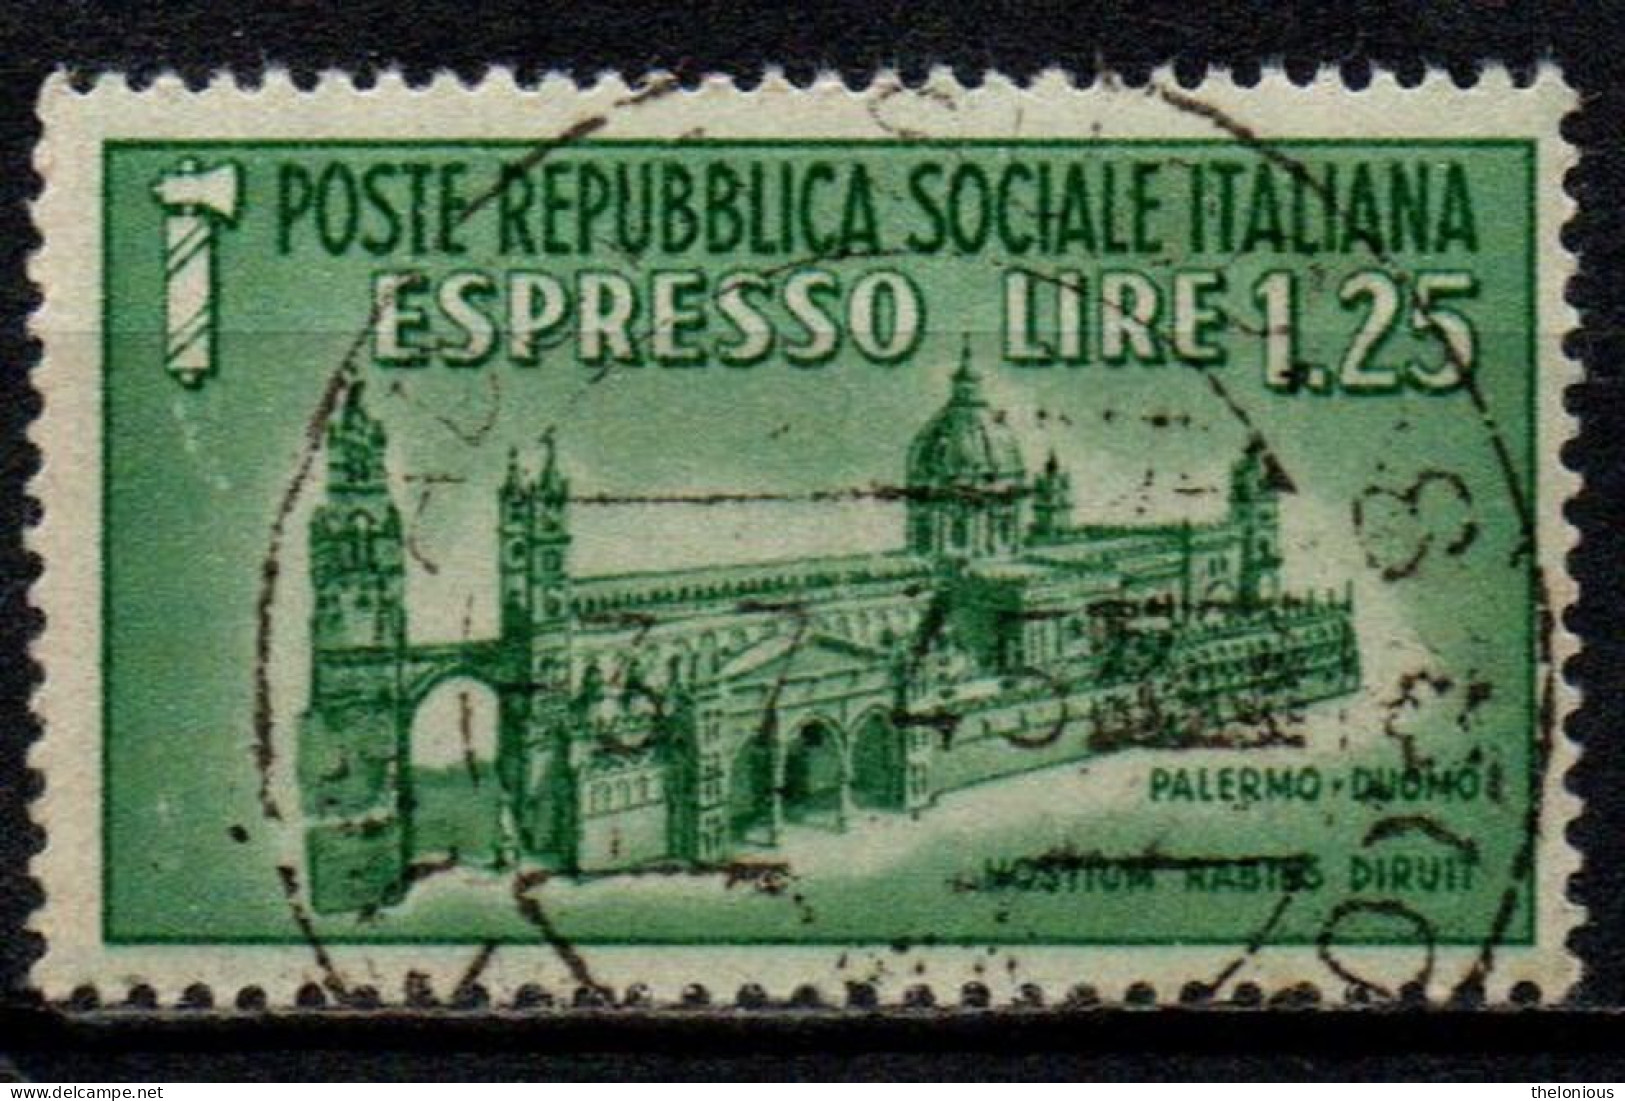 1944 Repubblica Sociale: Monumenti Distrutti - Espresso Lire 1,25 Usato - Poste Exprèsse